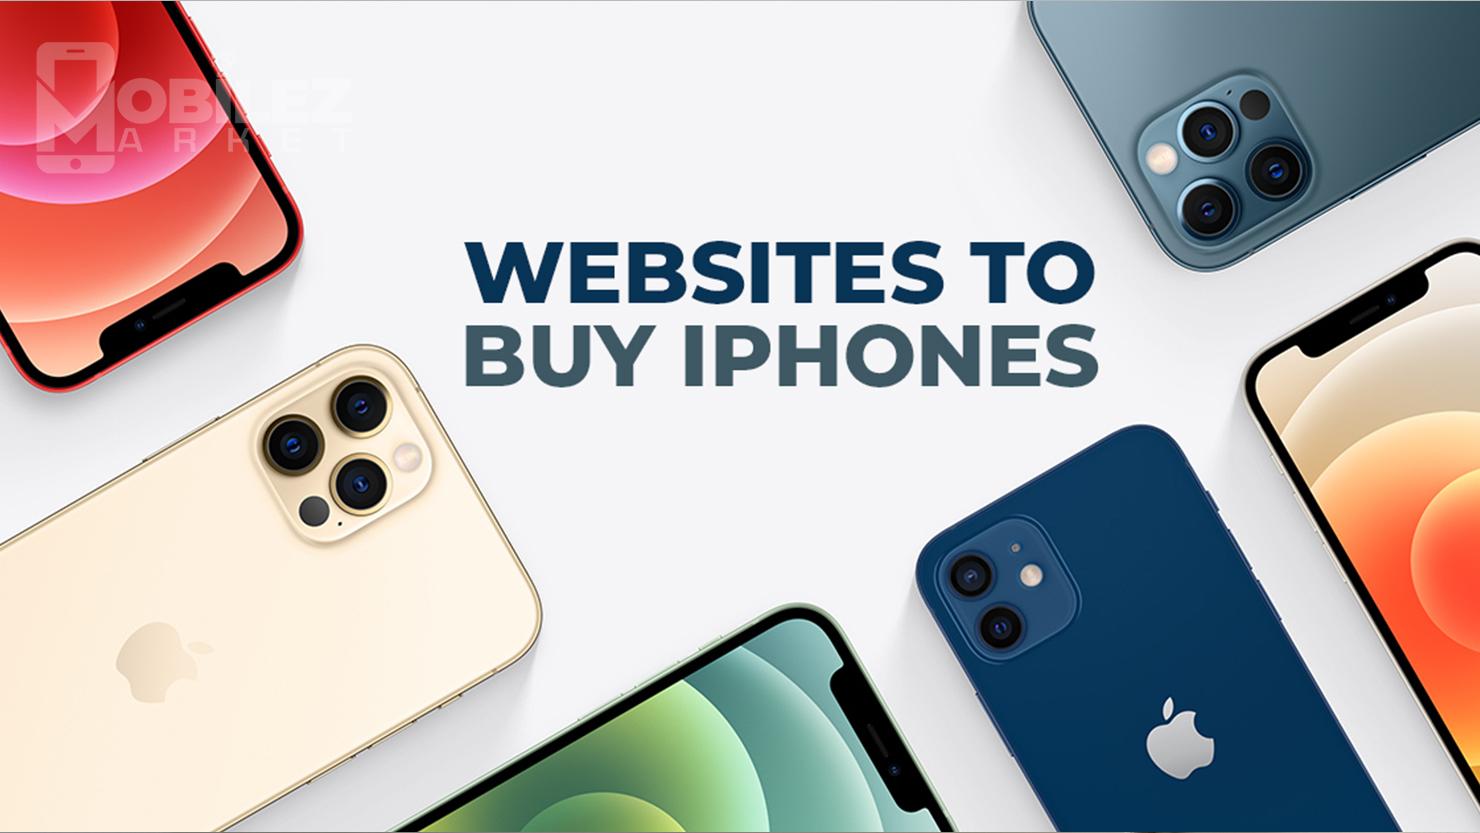 Websites To Buy iPhones | Apple iPhone Buy Online